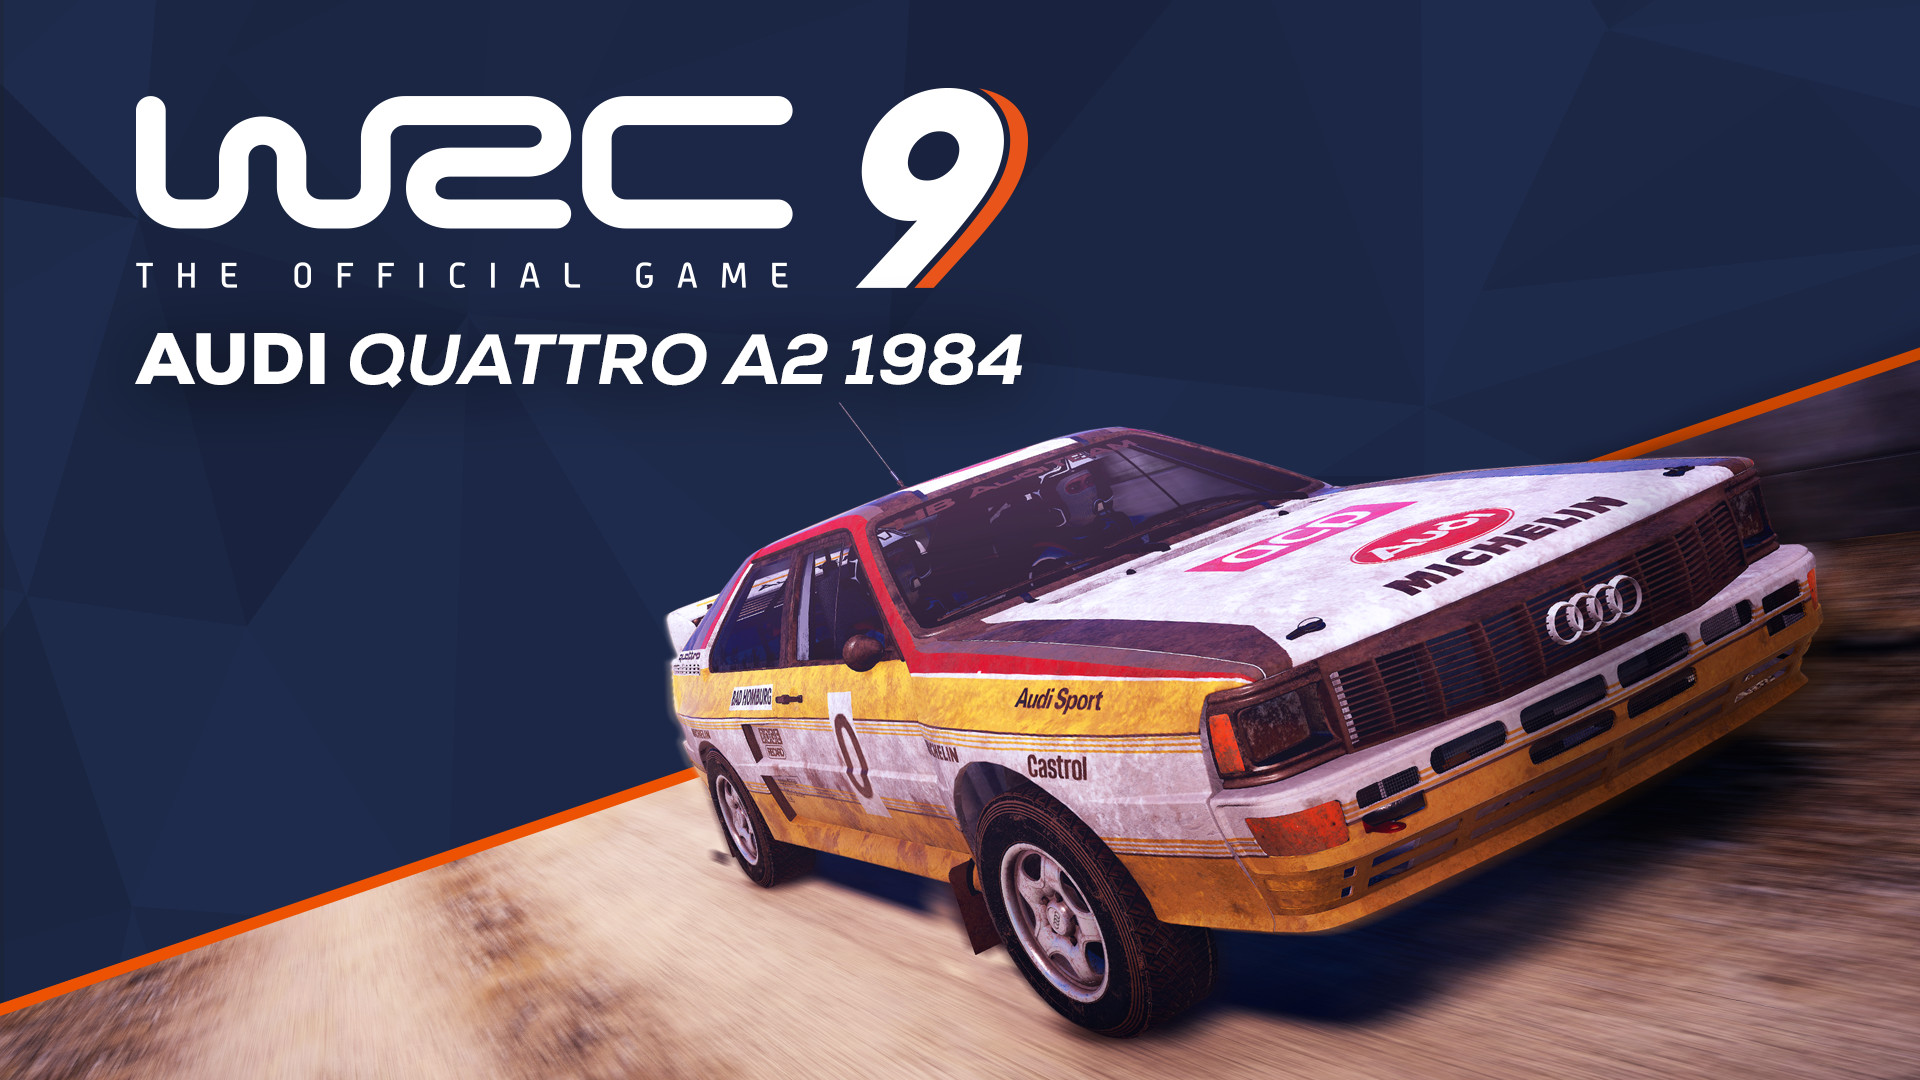 WRC 9 - Audi Quattro A2 1984 DLC Steam CD Key [$ 1.83]